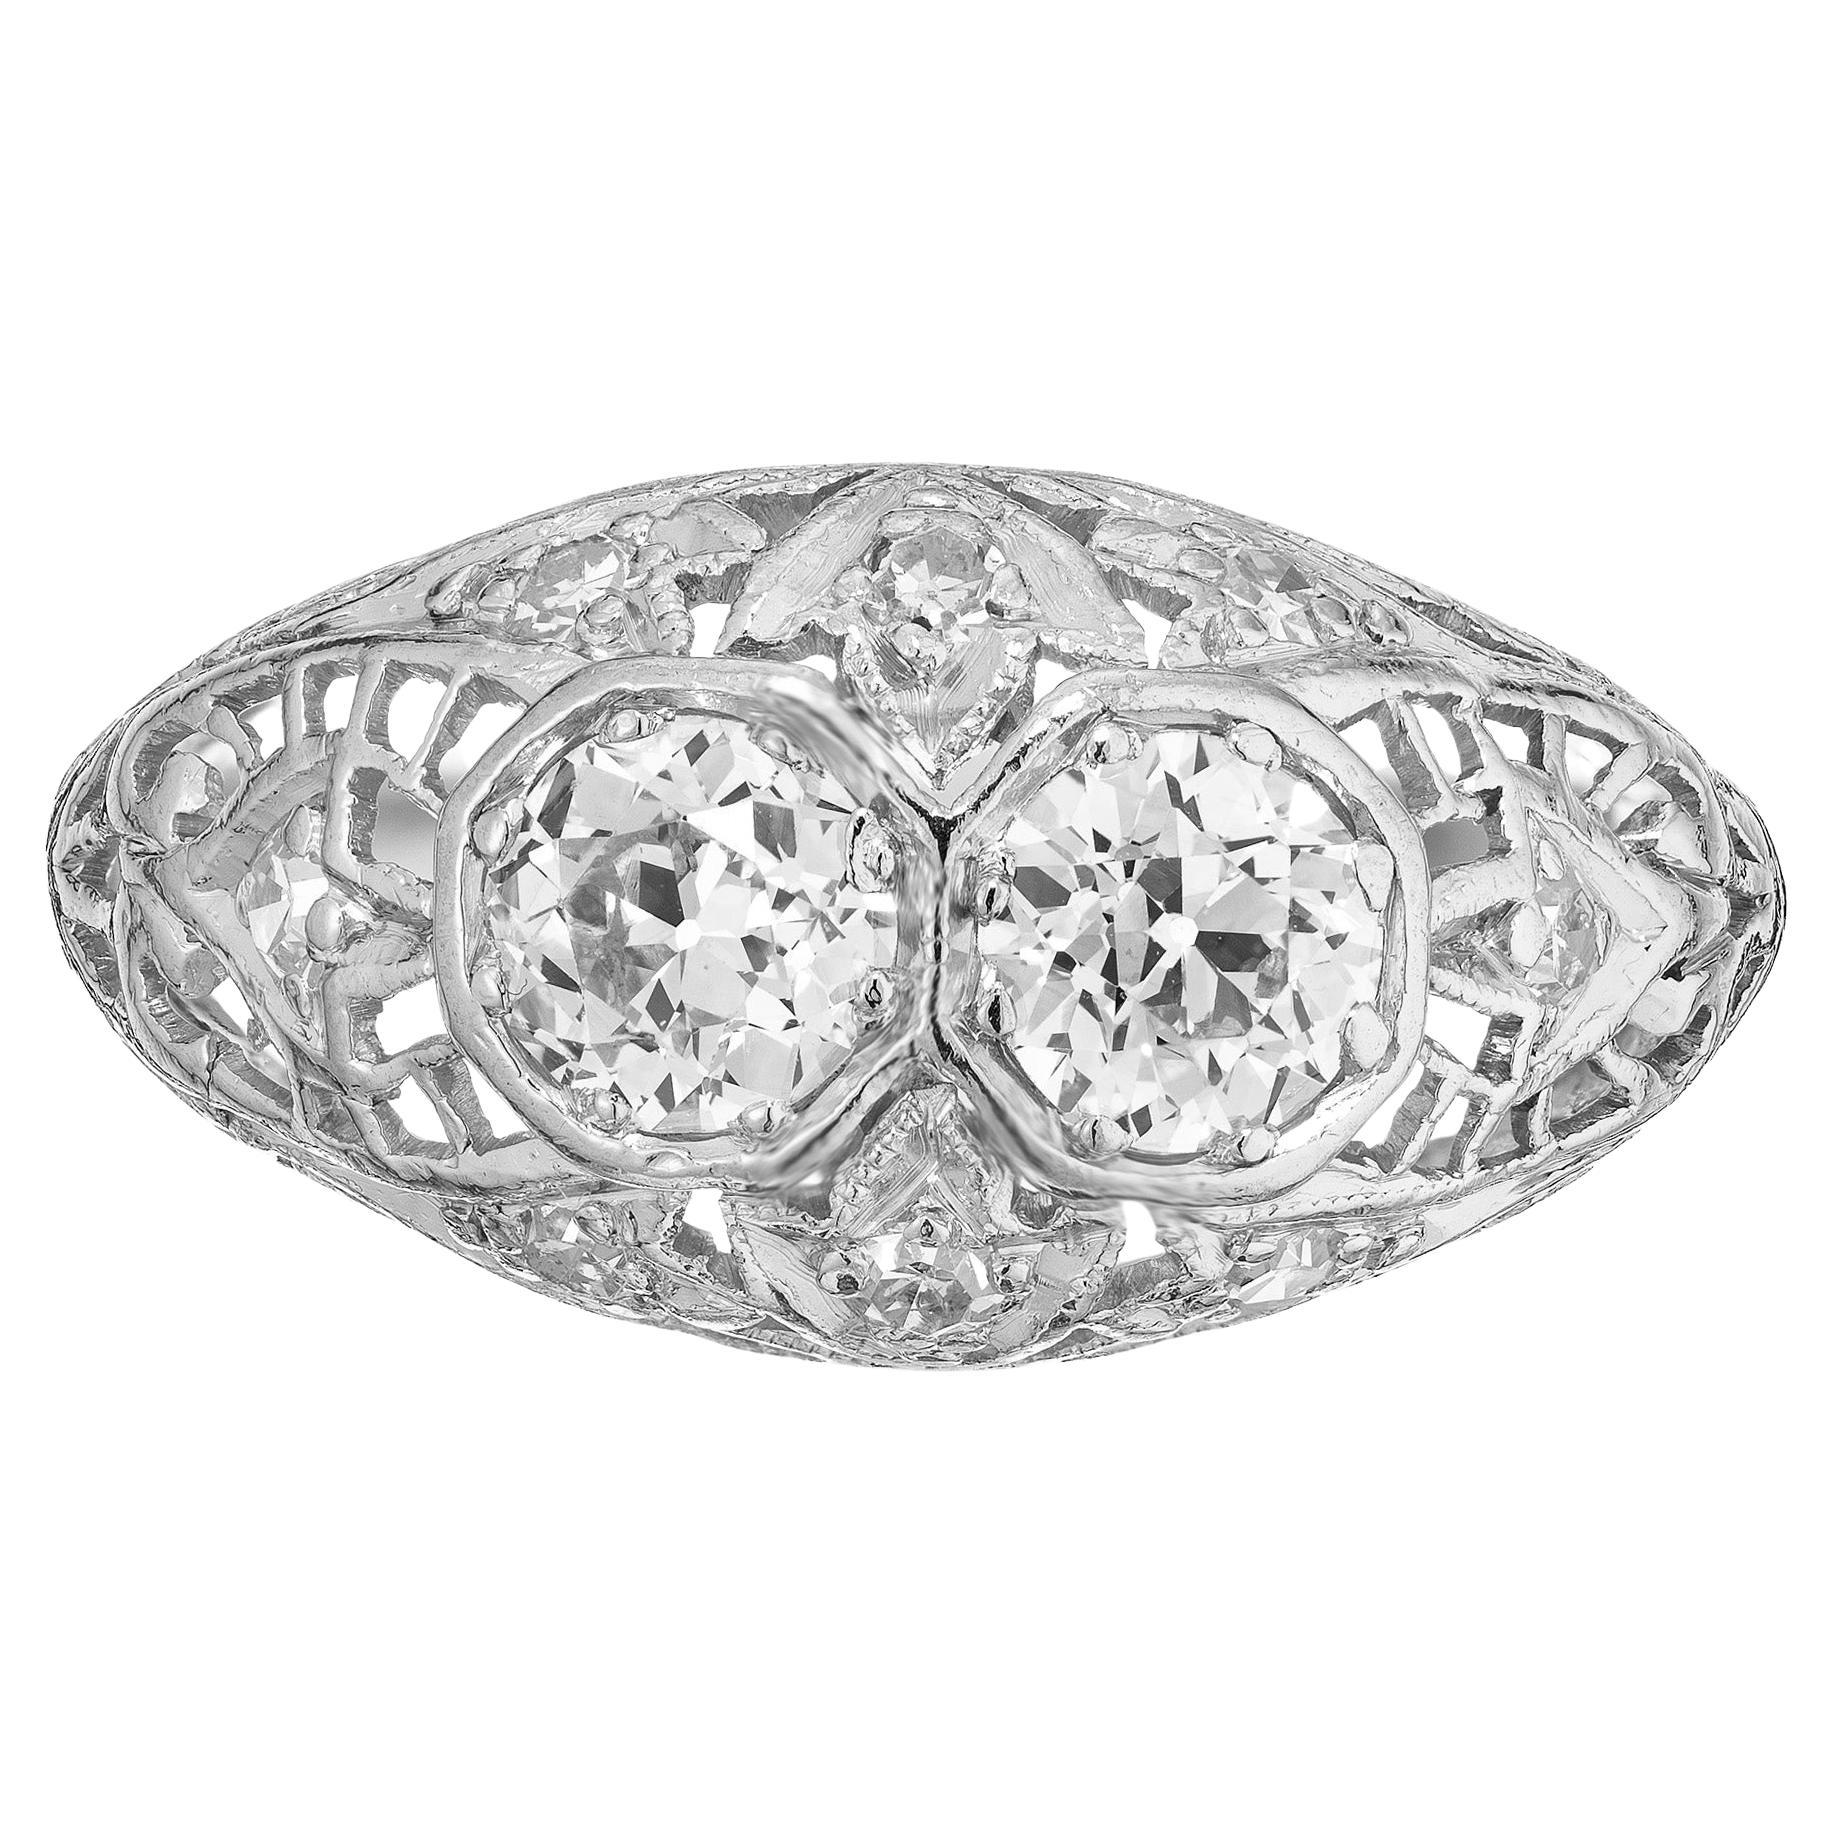 .50 Carat Art Deco Diamond Filigree Dome Platinum Engagement Ring